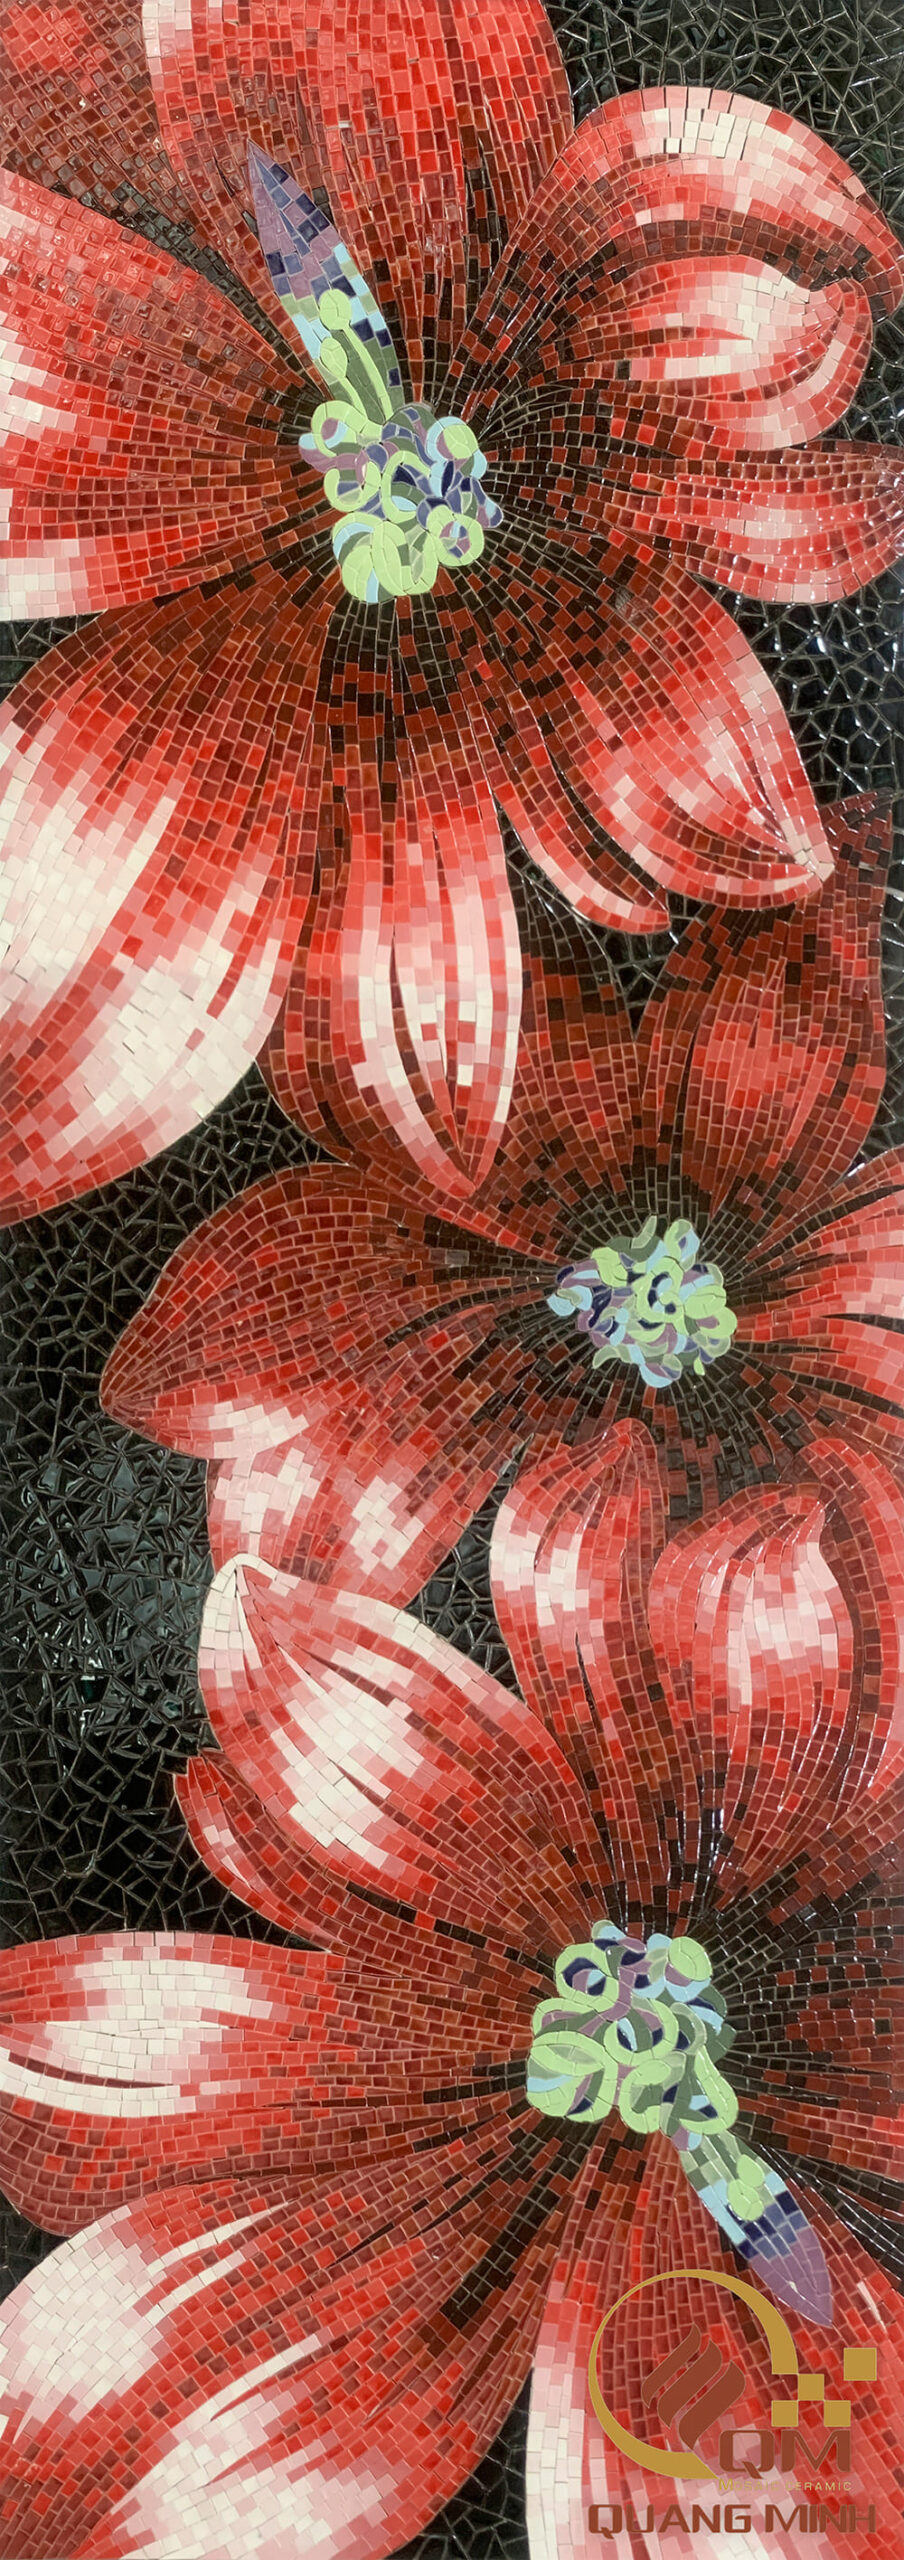 Tranh Mosaic Gốm Hoa Daisy QM-DSY01